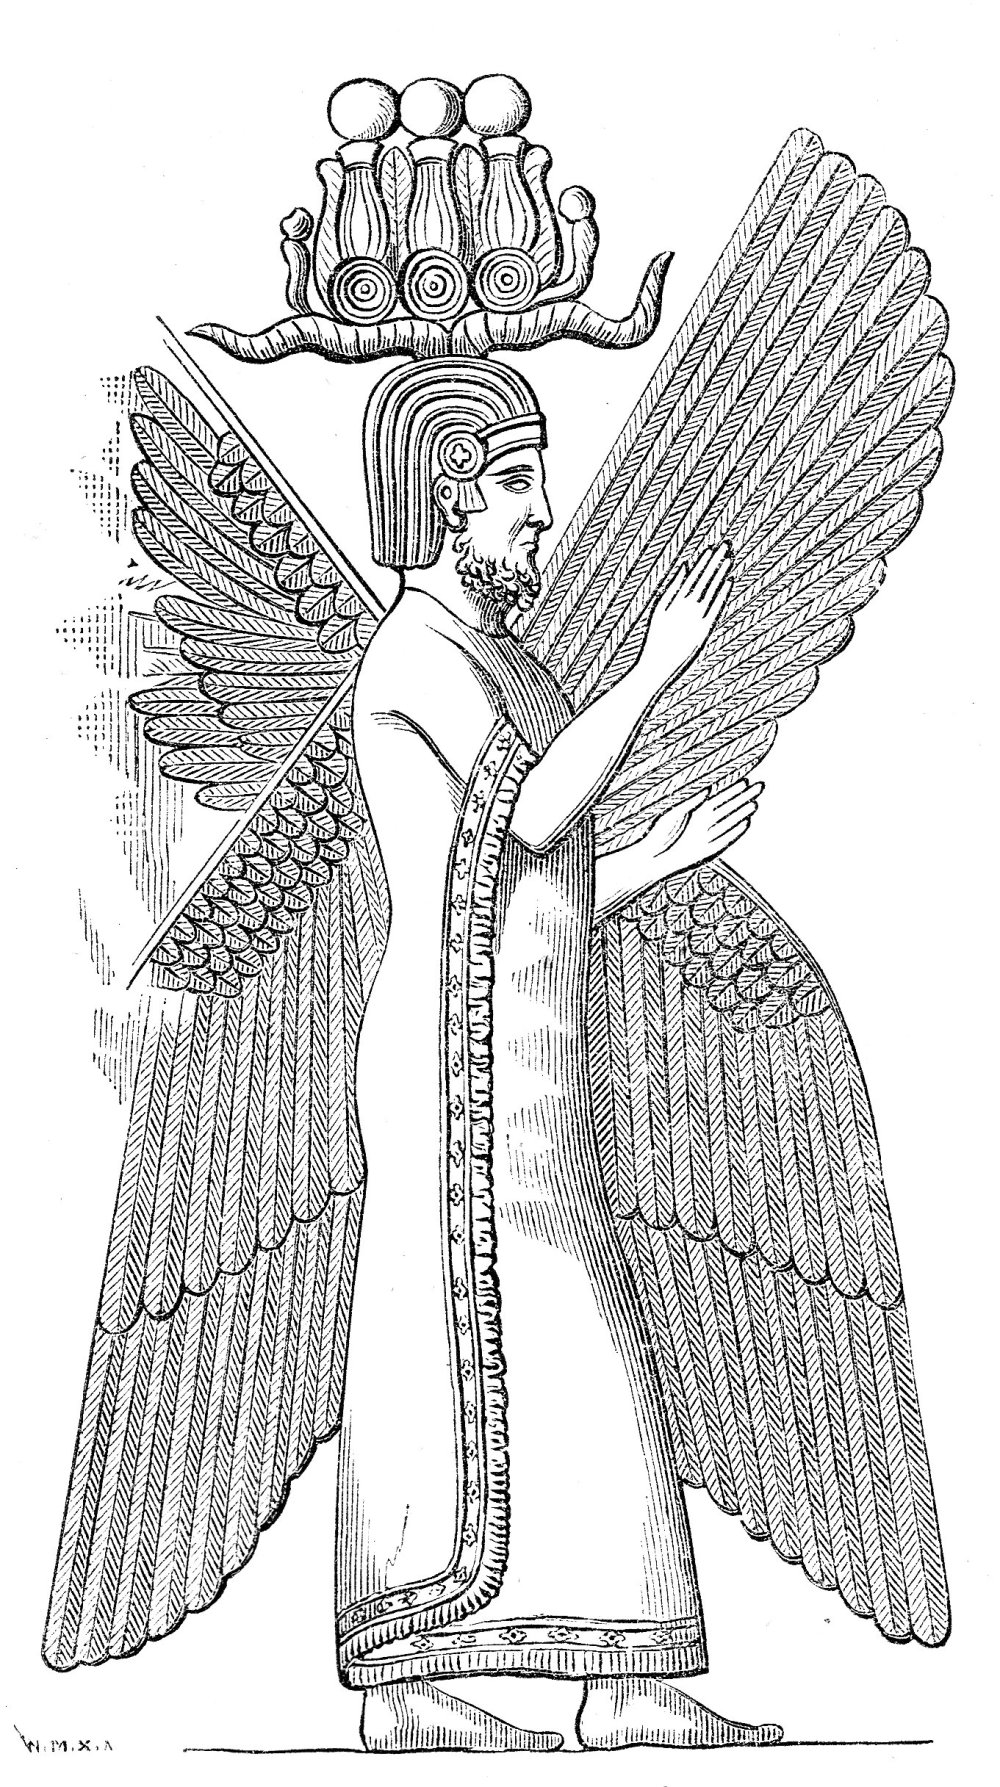 Cyrus II of Persia